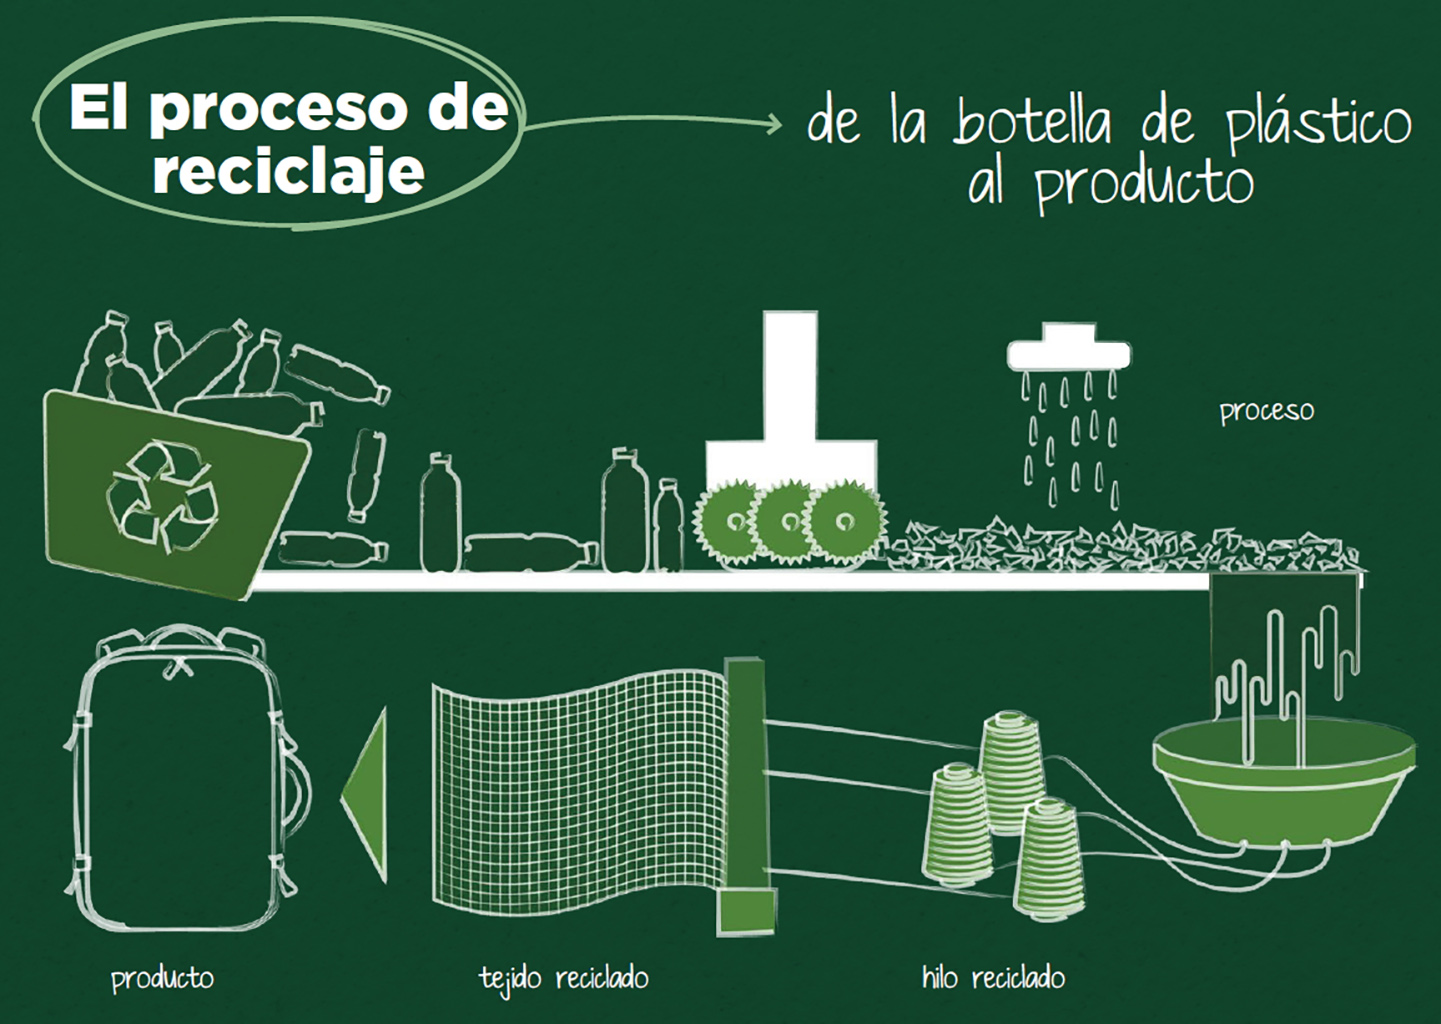 El 90% del catálogo de TUCANO ya está fabricado con materiales reciclados